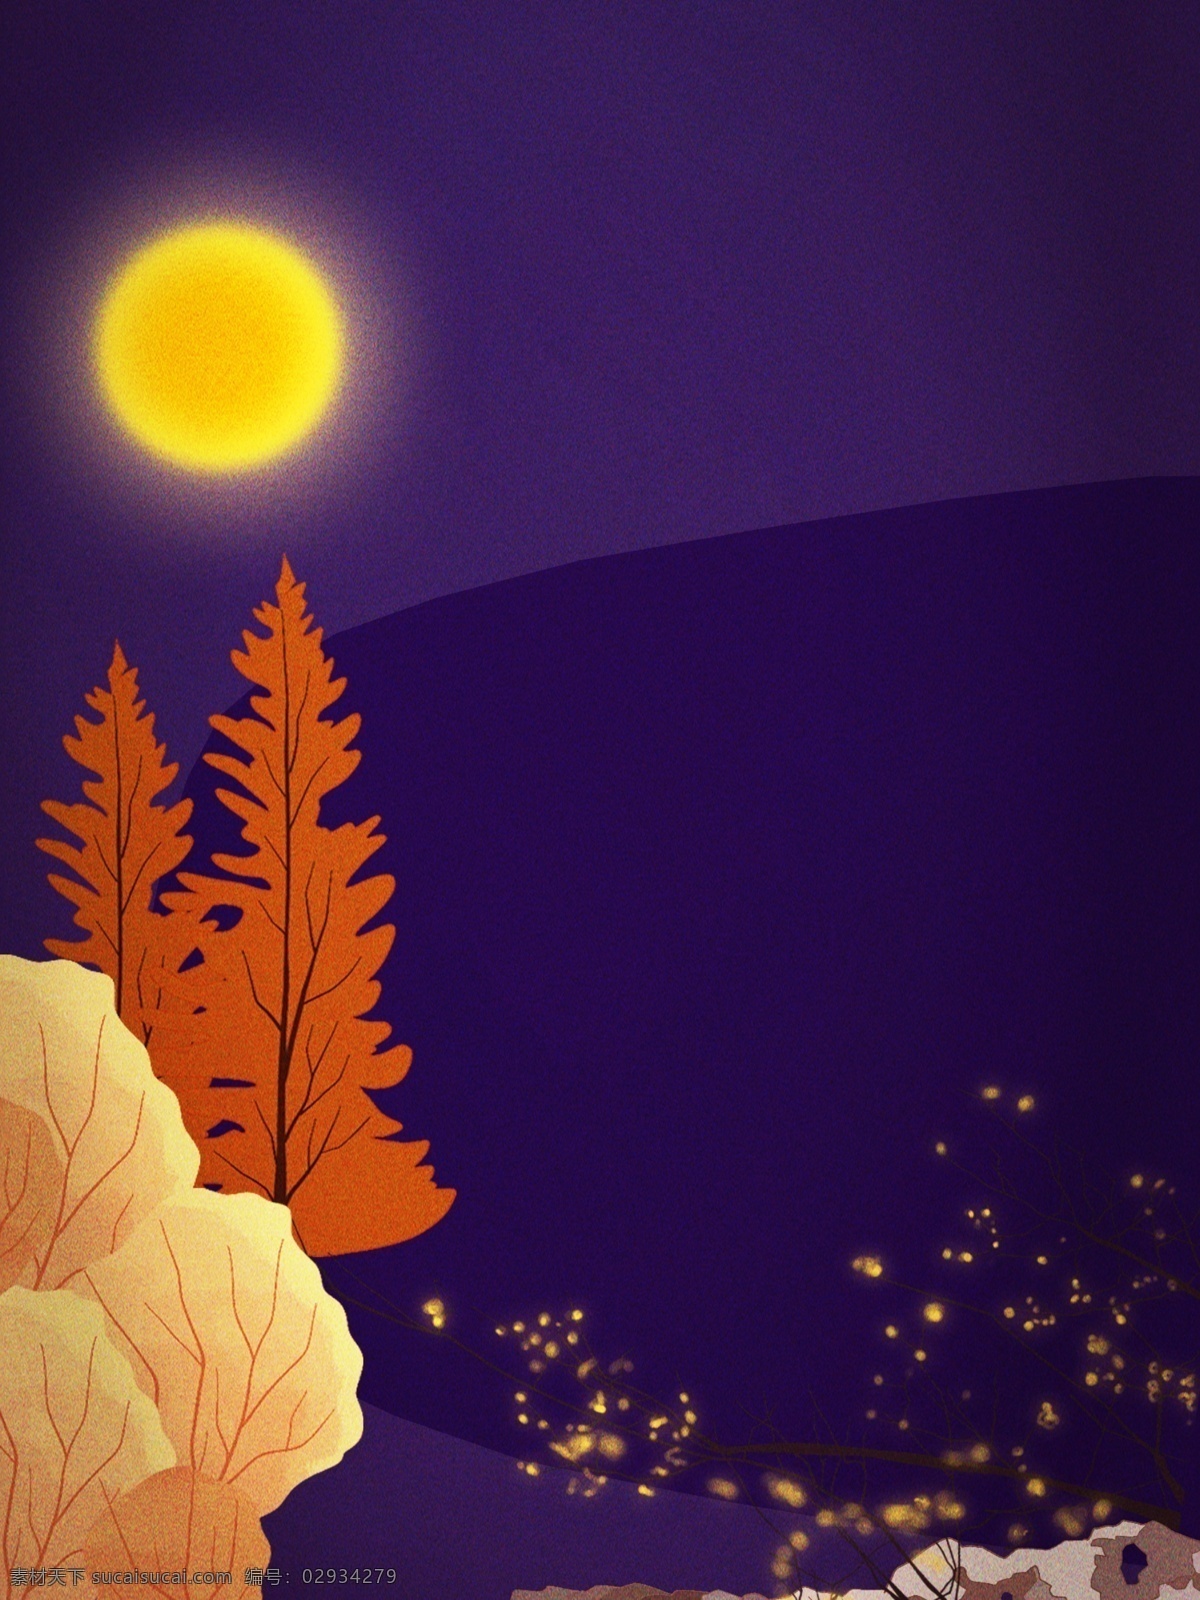 唯美 林中 紫色 夜景 背景 月亮 小清新 背景素材 晚安 夜晚 晚上 夜 朴素 木 枯木 温馨 岩石